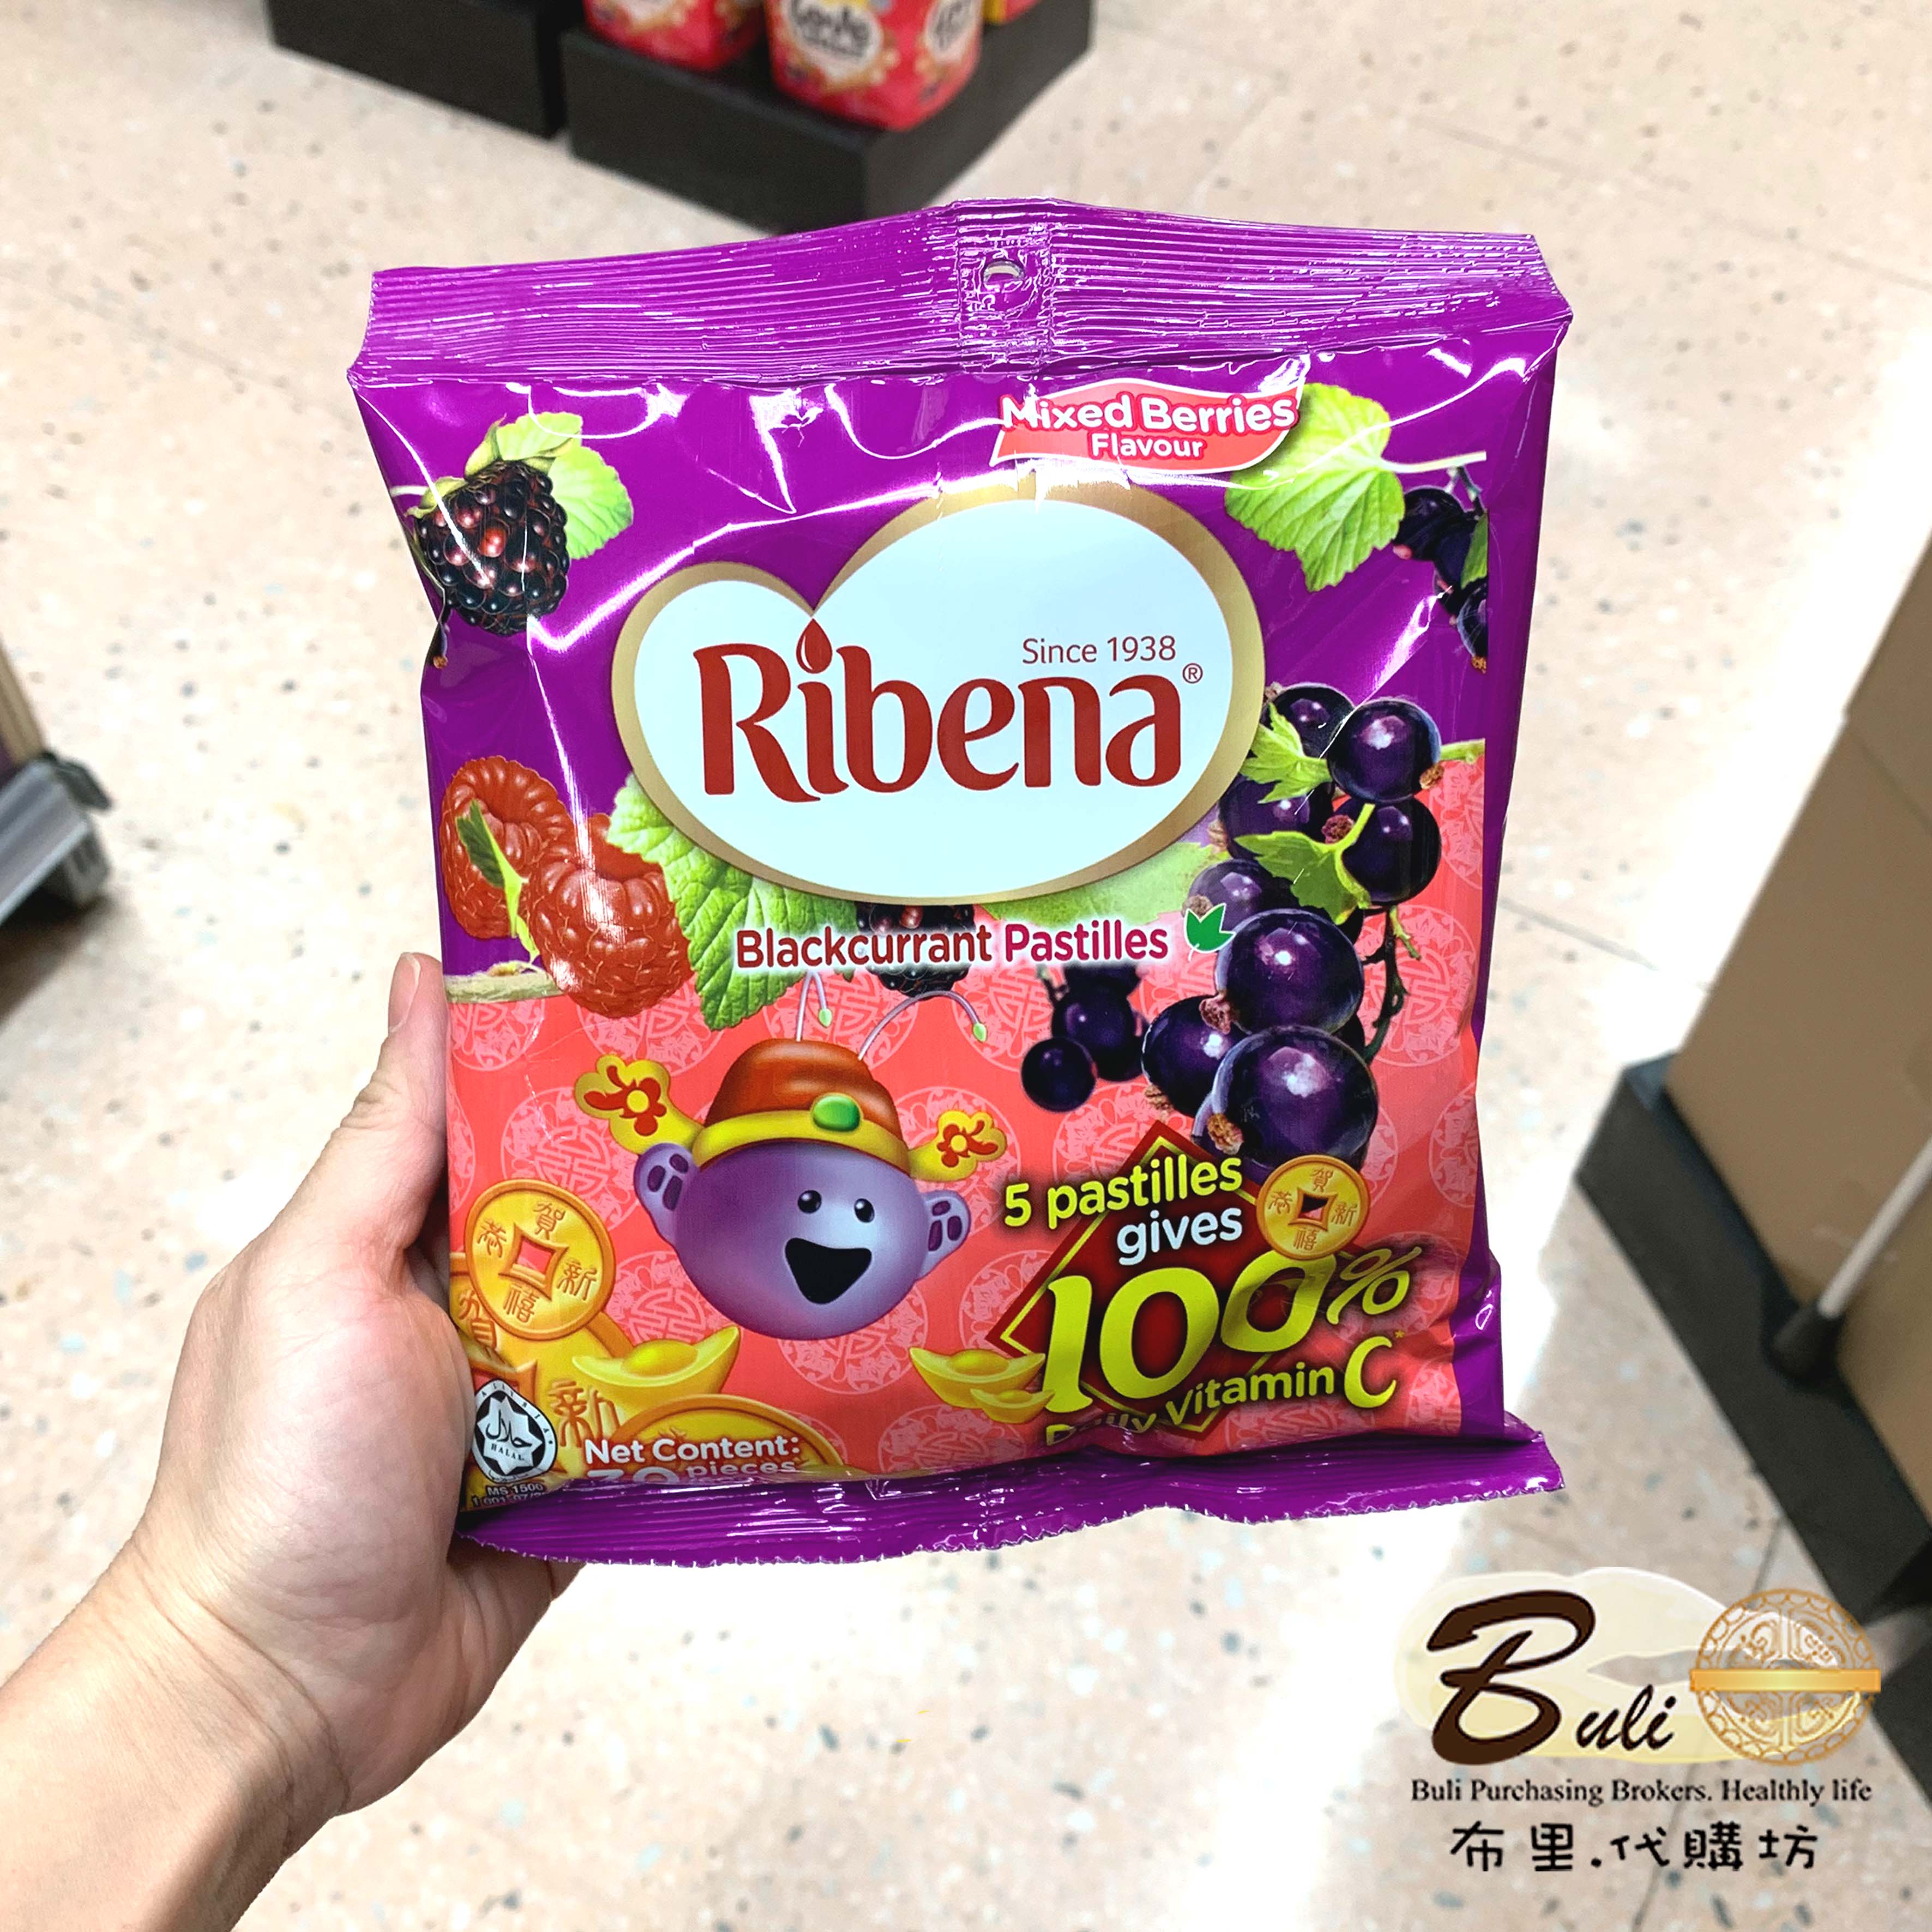 利宾纳100%每日维他命C黑加仑子软糖原味杂莓味30粒 独立包装